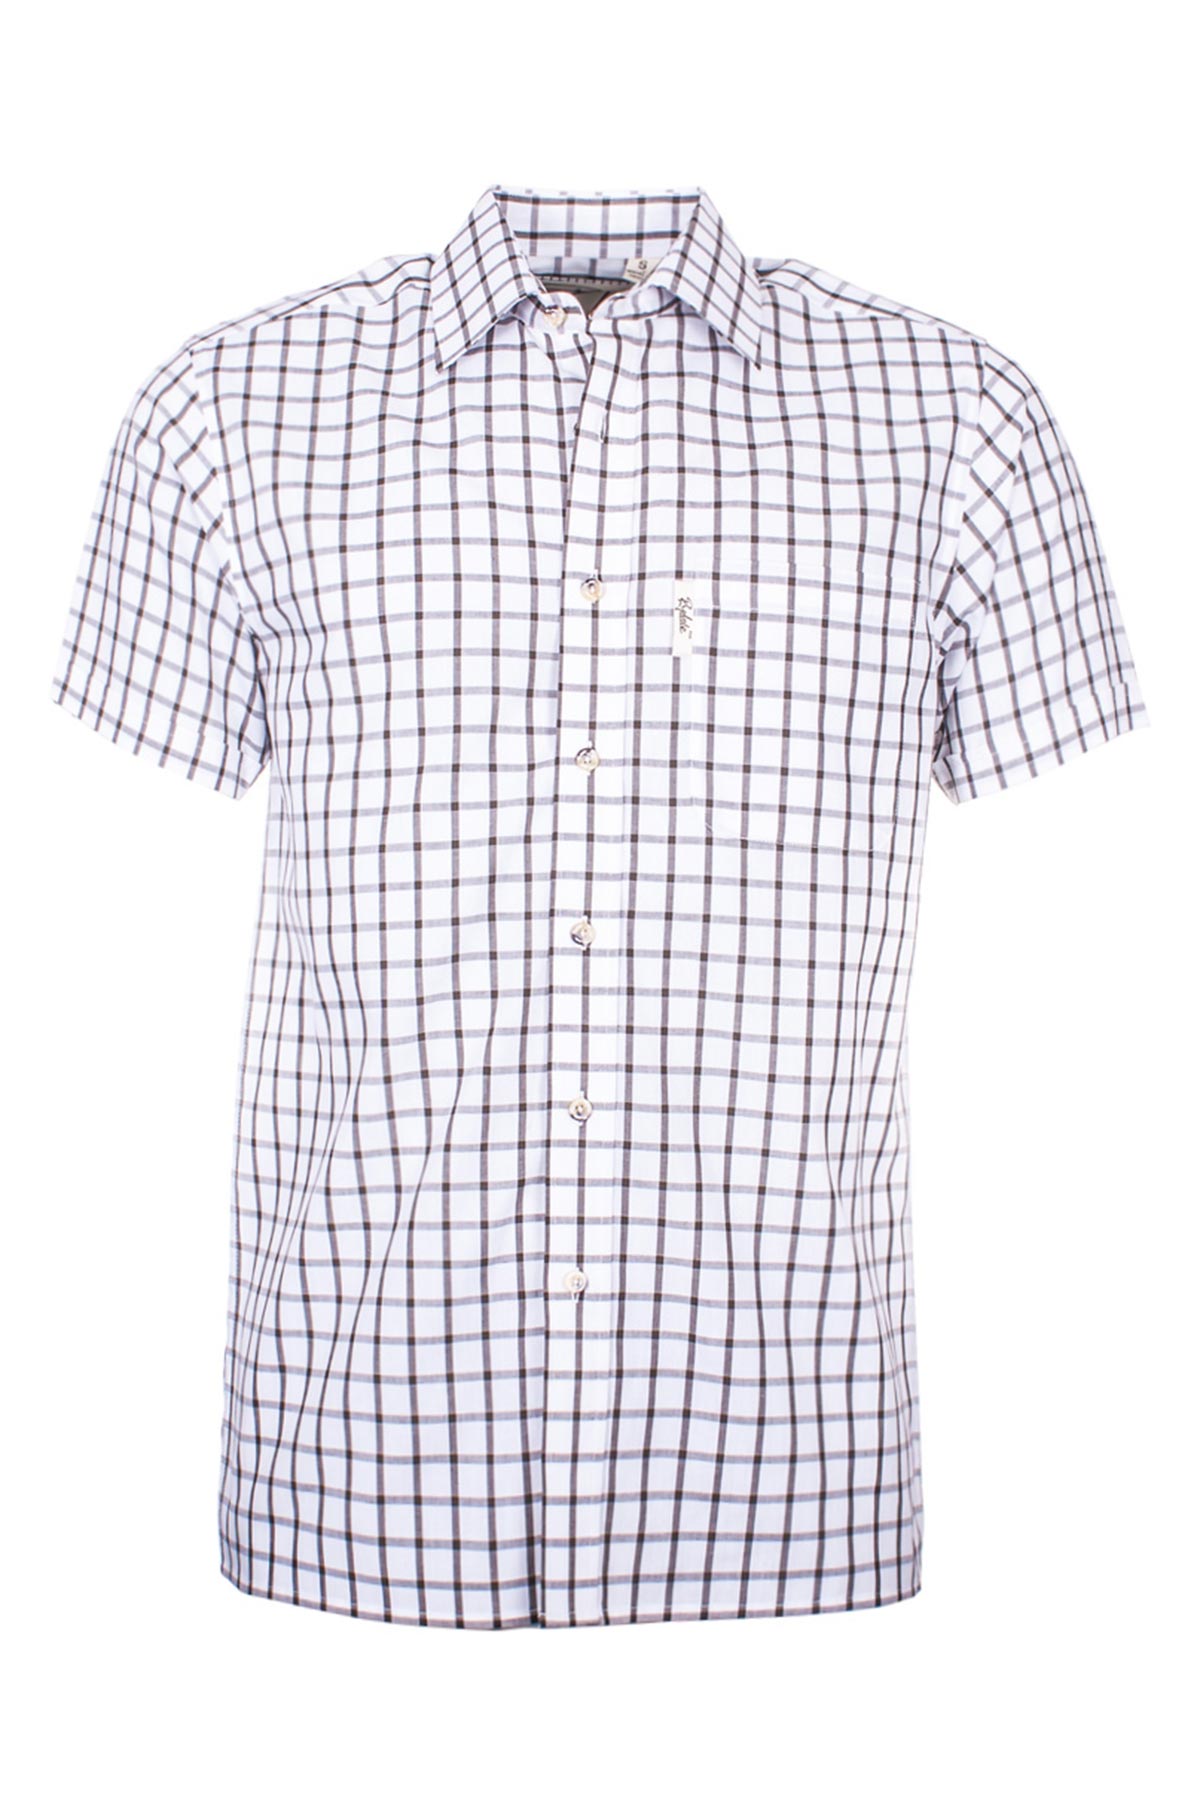 Mens Short Sleeved Shirts UK | Short Sleeved Shirts for Men | Rydale